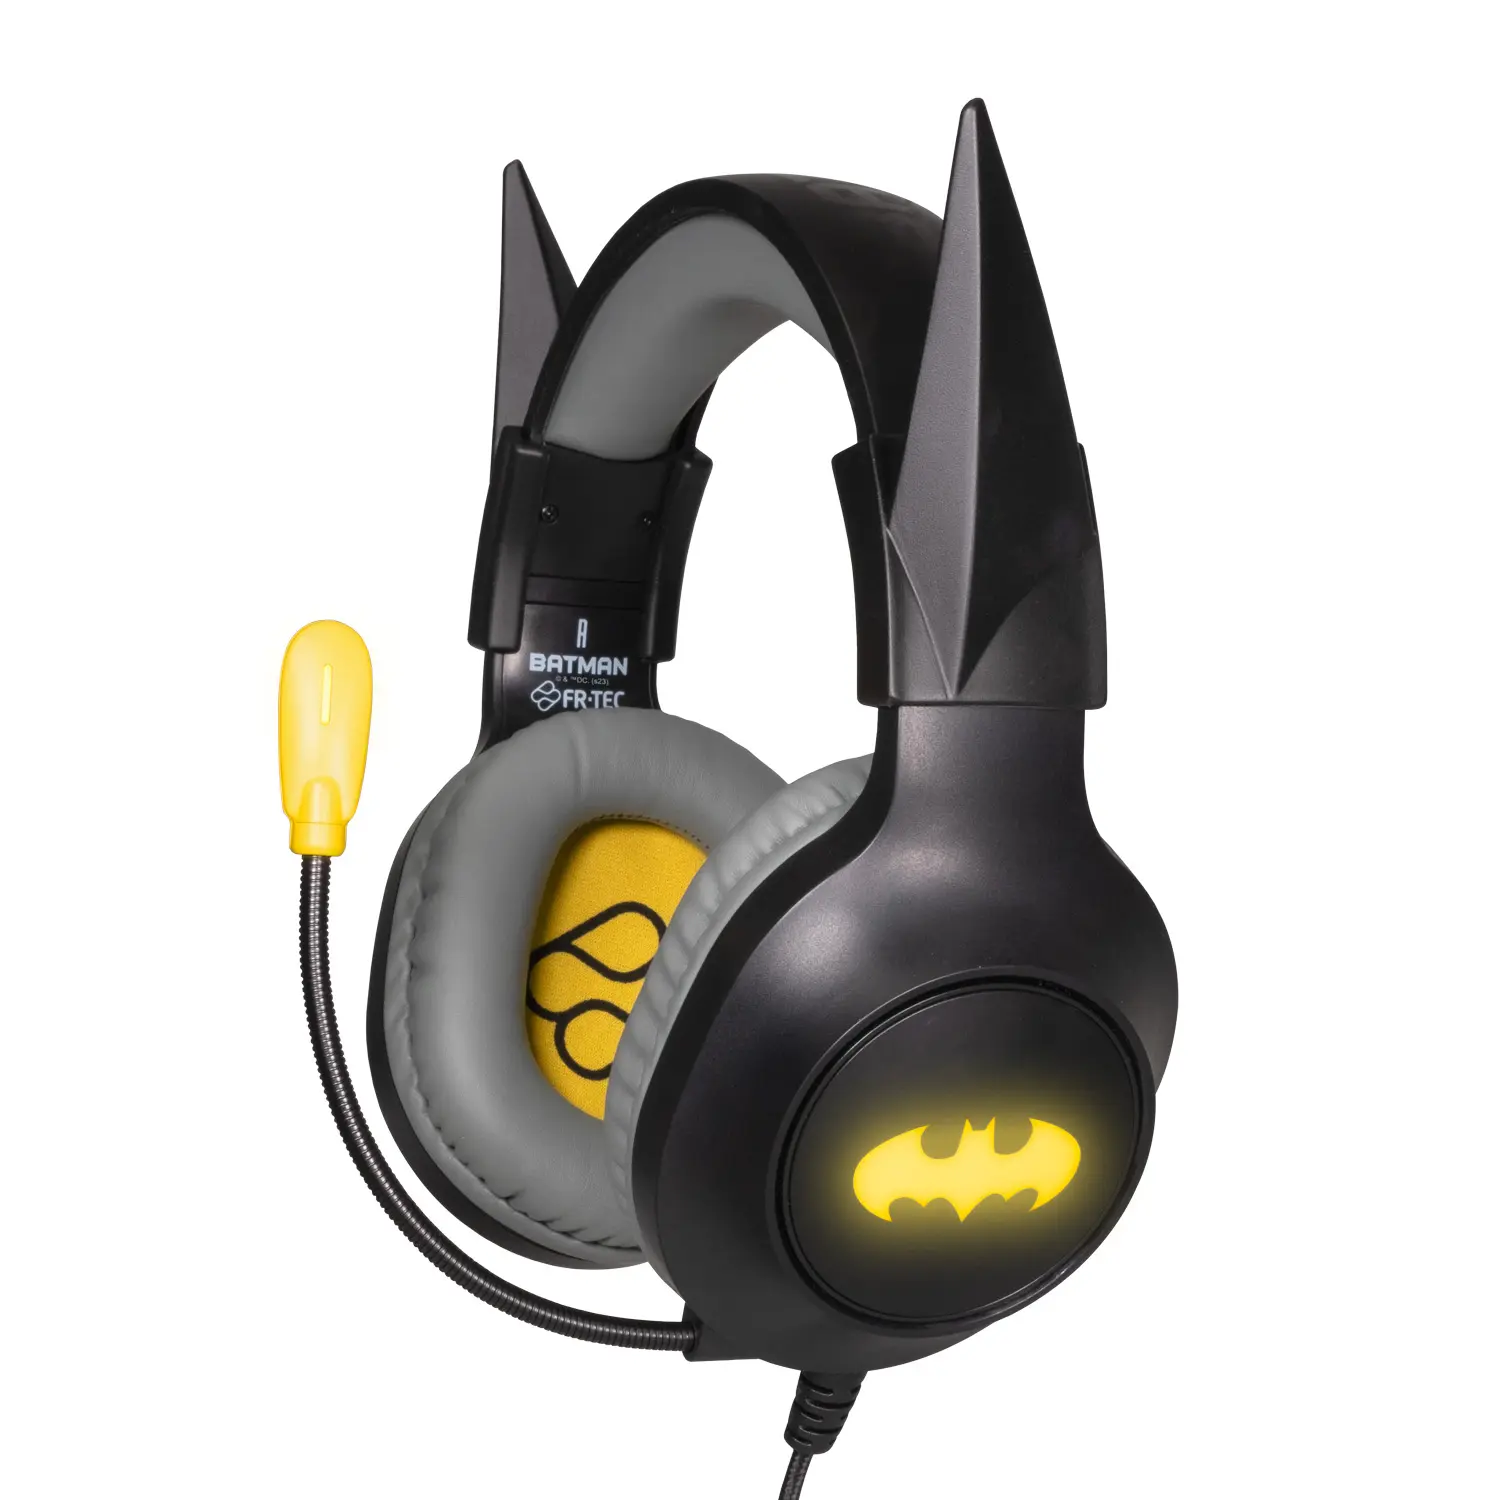 FR-TEC Batman Auriculares Gaming con Microfono Plegable - Diadema Ajustable - Almohadillas Acolchada